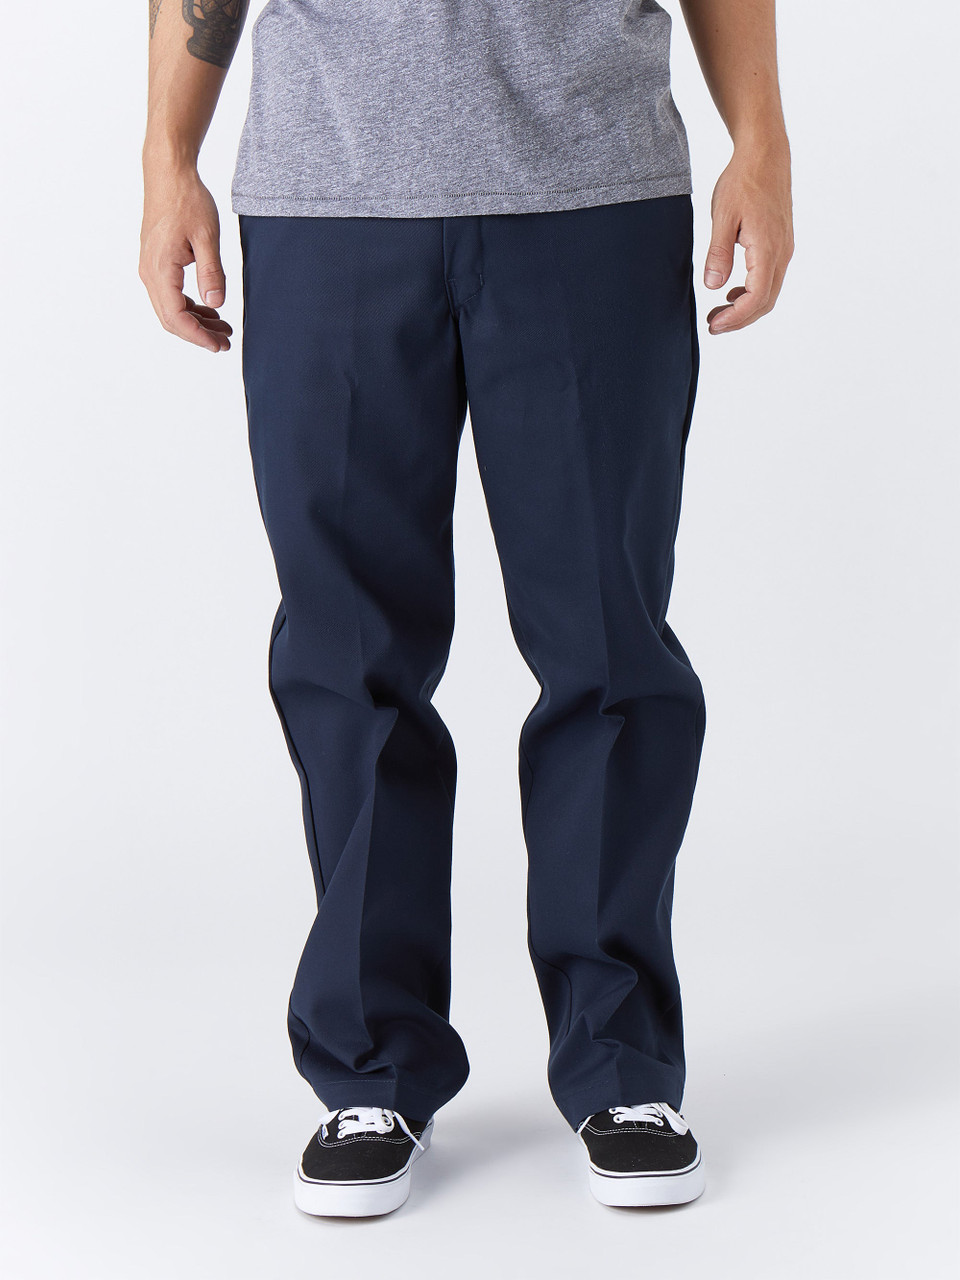 Navy Commuter Men's Dress Pants - Truwear